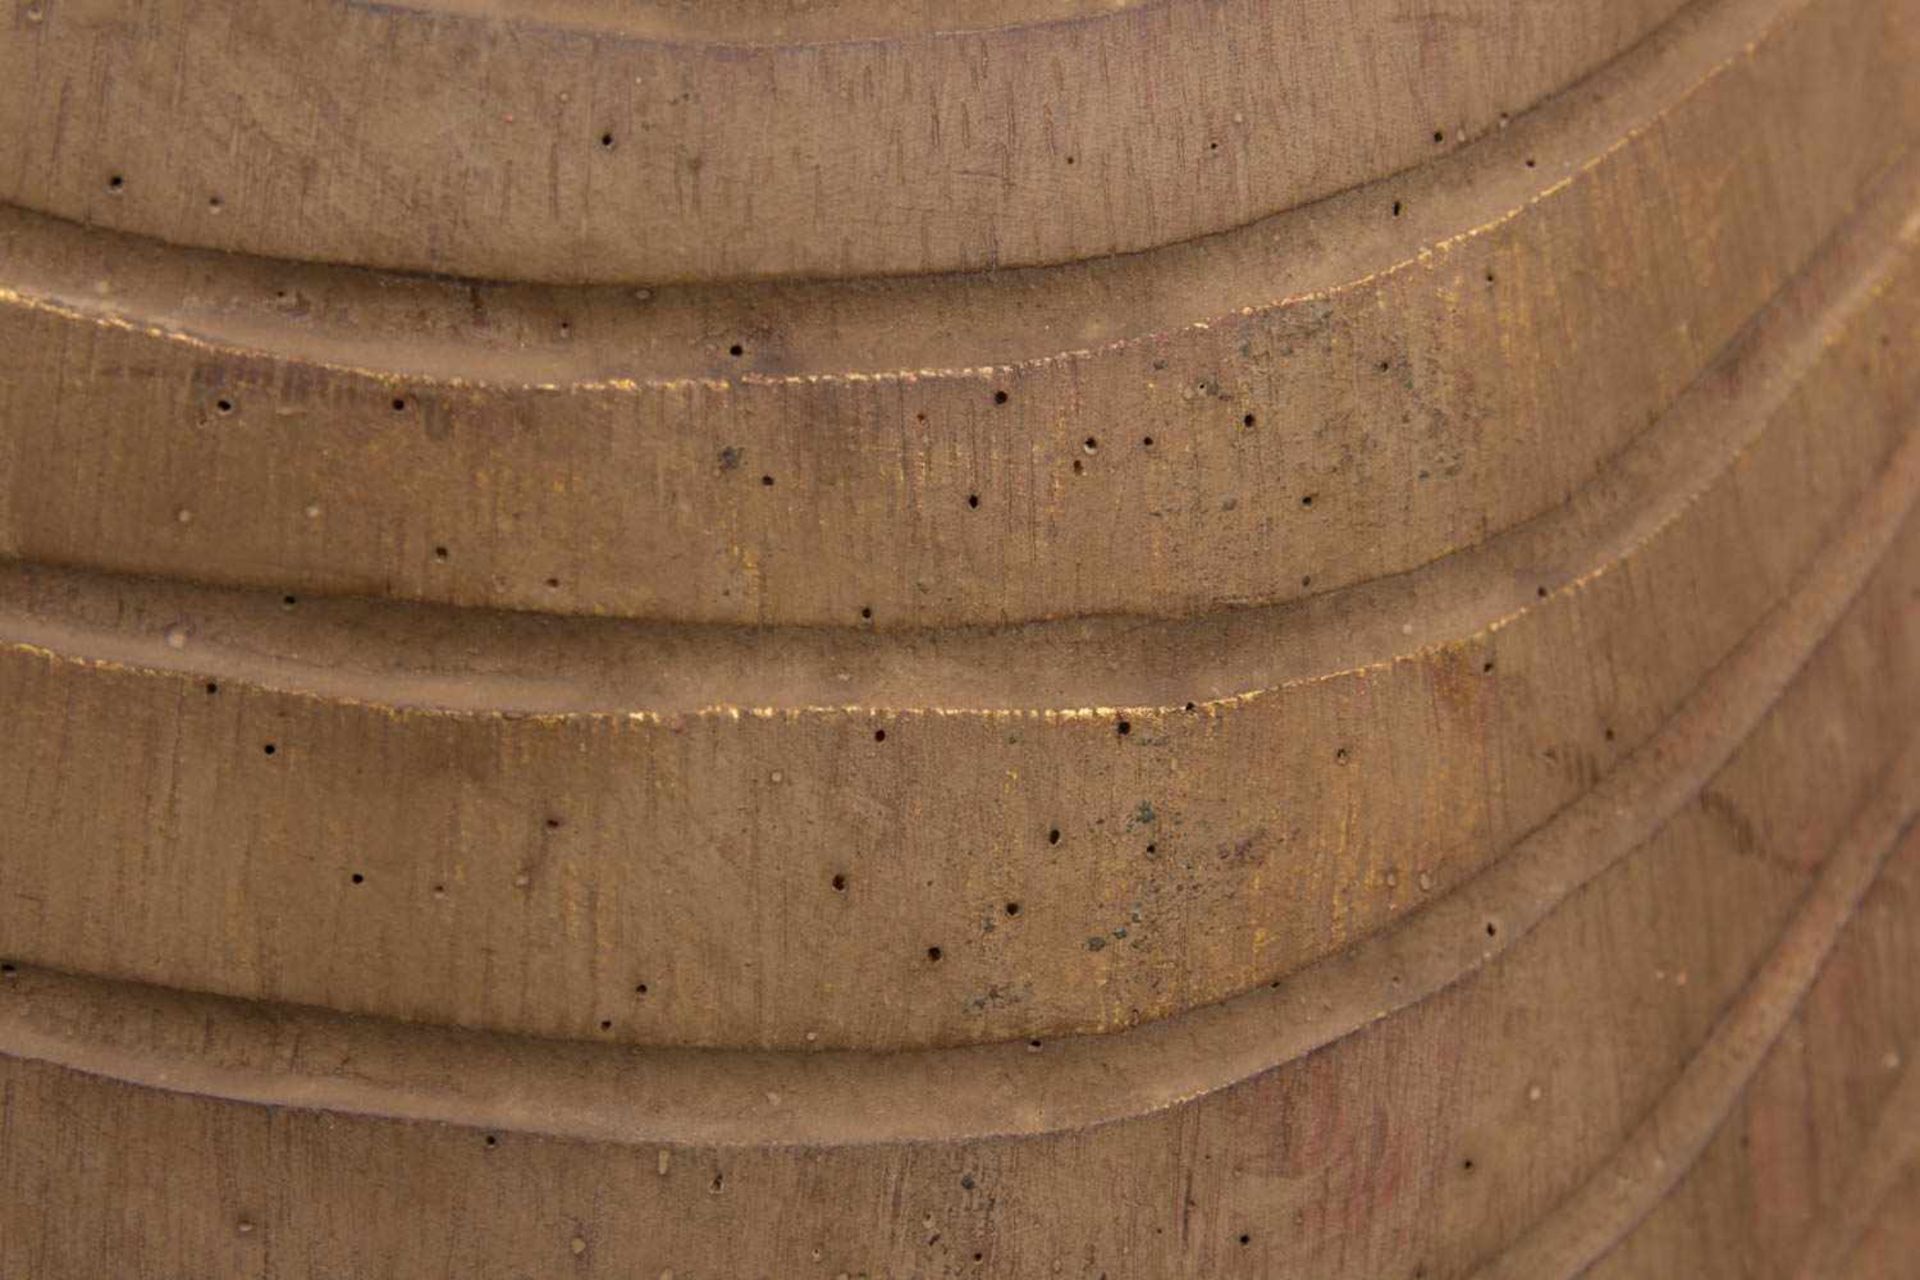 THAILÄNDISCHE BUDDHA STATUE, Holz, 20. Jh.Betende Skulptur in sehr gutem Zustand auf Sockel stehend. - Image 5 of 6